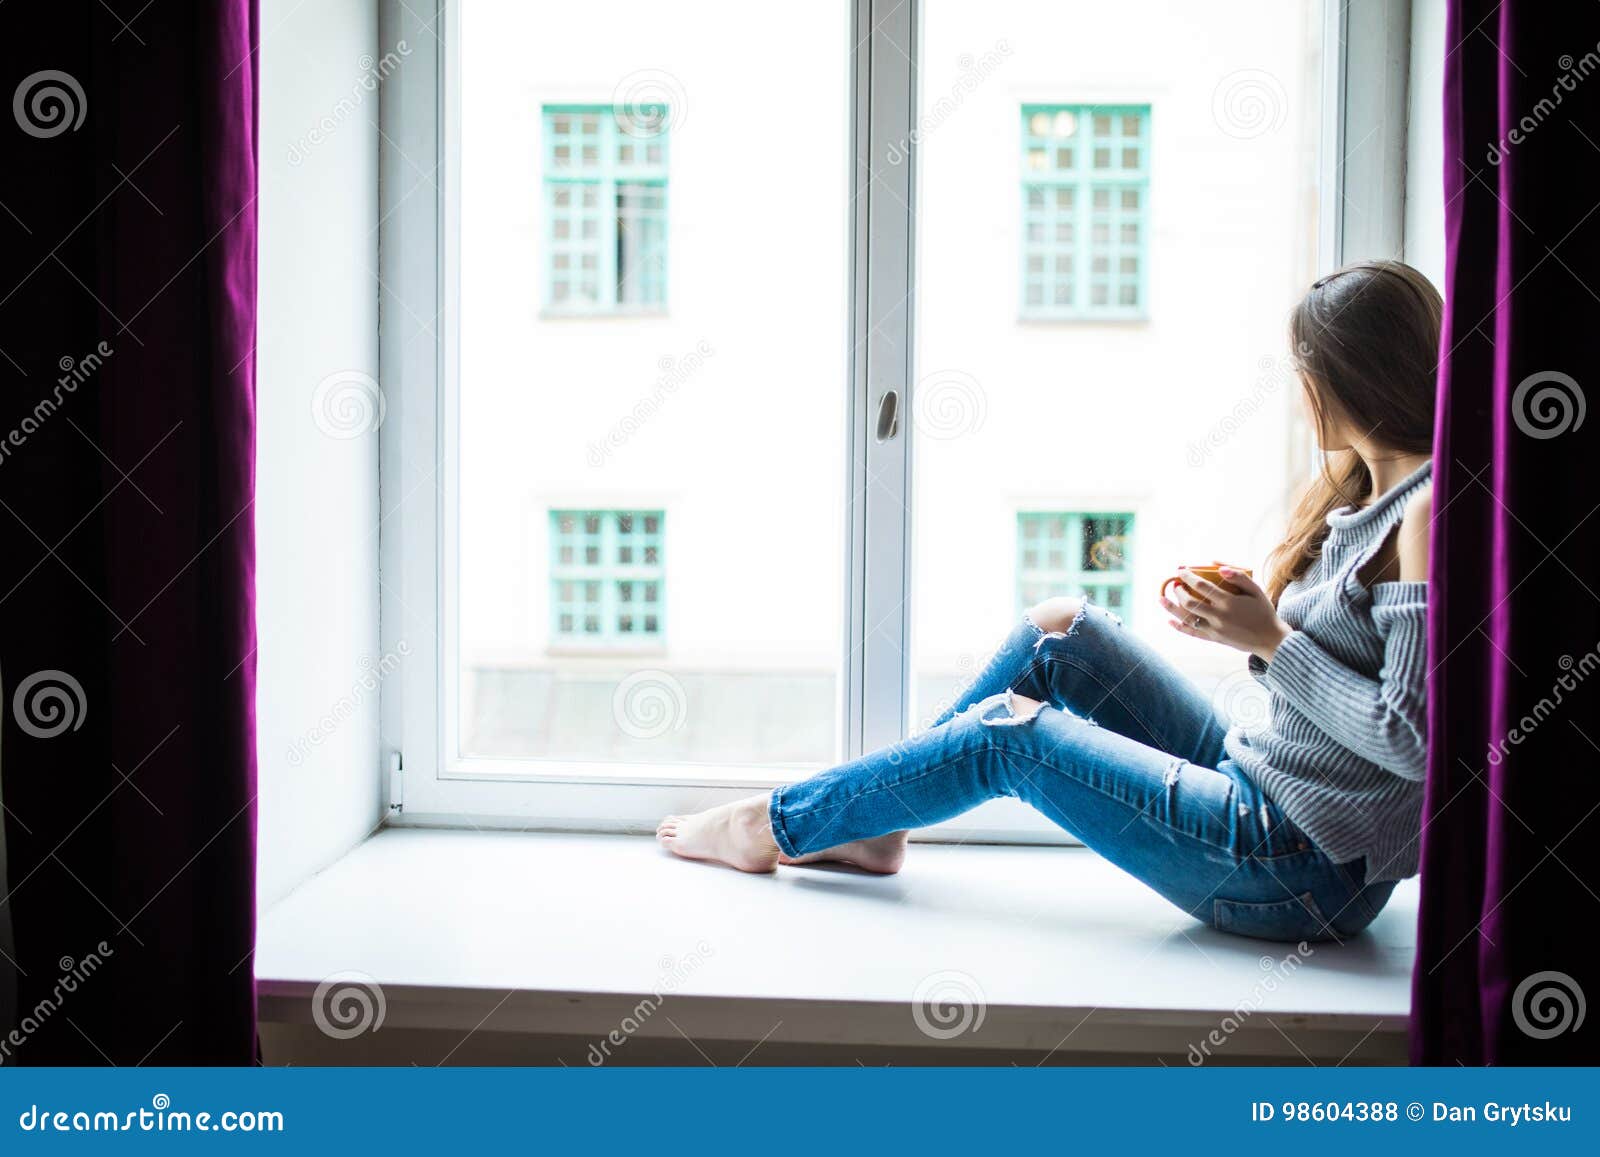 休闲、文学和人的观念。年轻女子少女坐在窗台上在家看书。平静而舒适。在家坐在窗台上看书的女人生活方式免费下载_jpg格式_2451像素_编号42680897-千图网